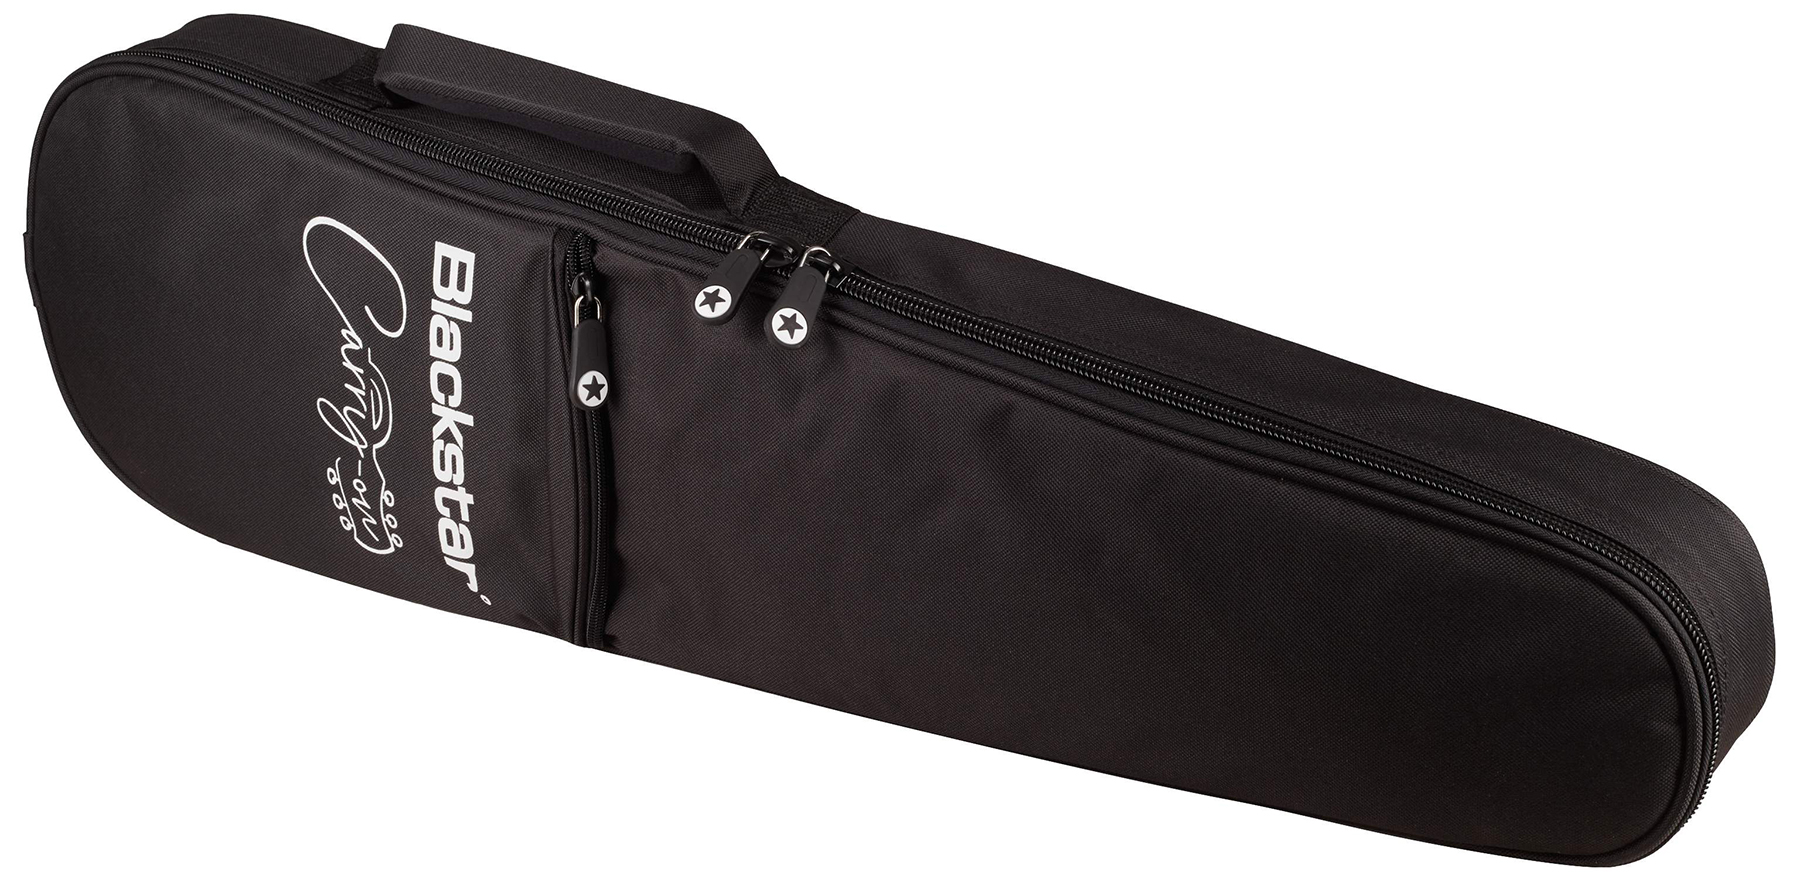 Blackstar Carry-on Travel Guitar Standard Pack +amplug2 Fly +housse - Jet Black - Electric guitar set - Variation 8